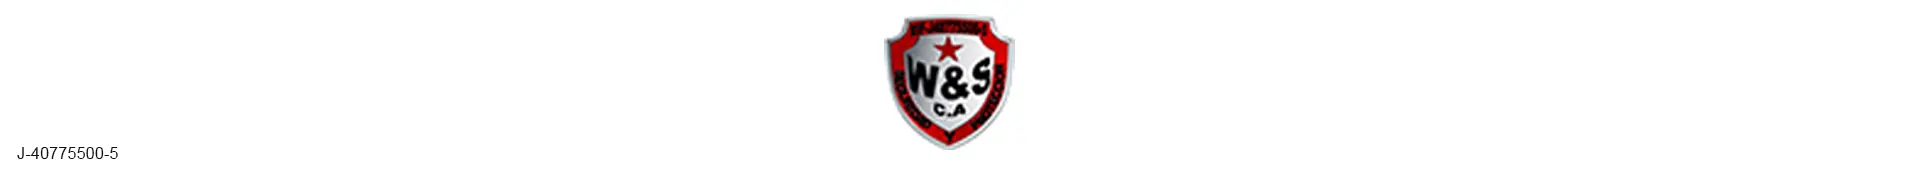 Imagen 1 del perfil de Seguridad y Protección W&S